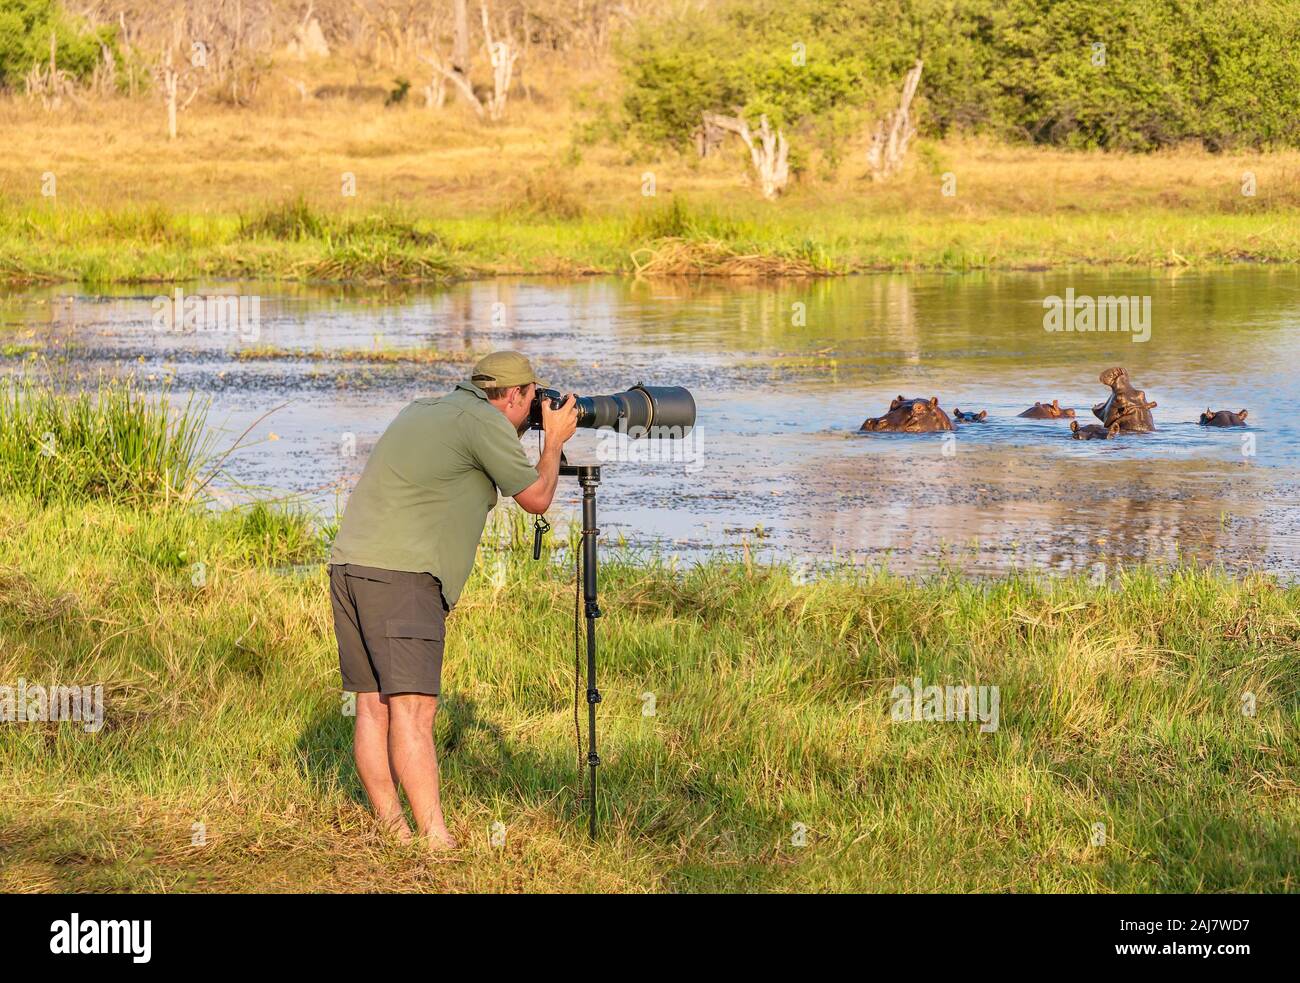 Norte de Botswana - Septiembre 25, 2014. Un hombre Wildlife Photographer toma fotos junto a un grupo de hipopótamos en un orificio de agua. Foto de stock